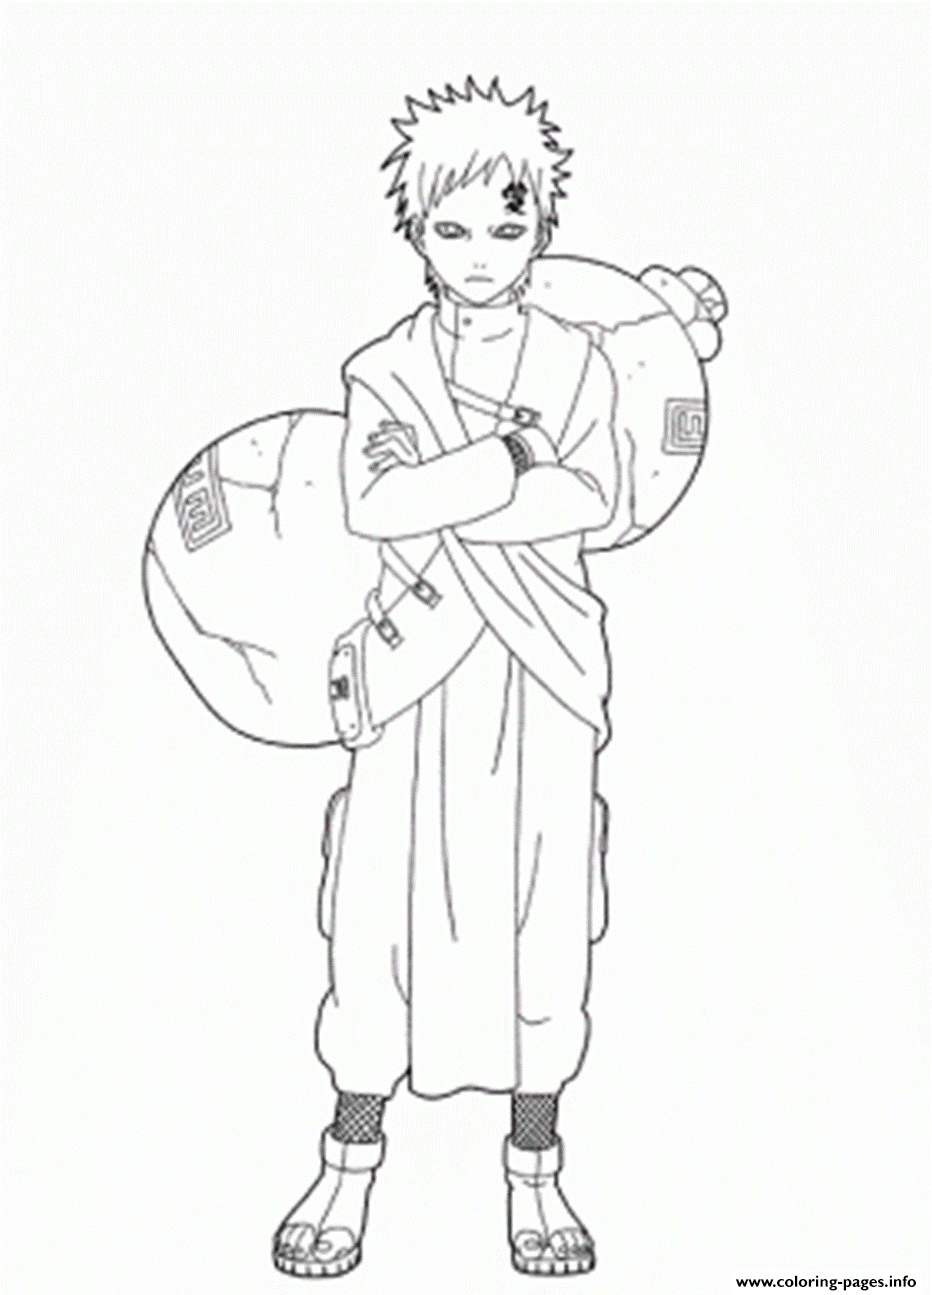 Naruto S Awesome Gaara1266 coloring